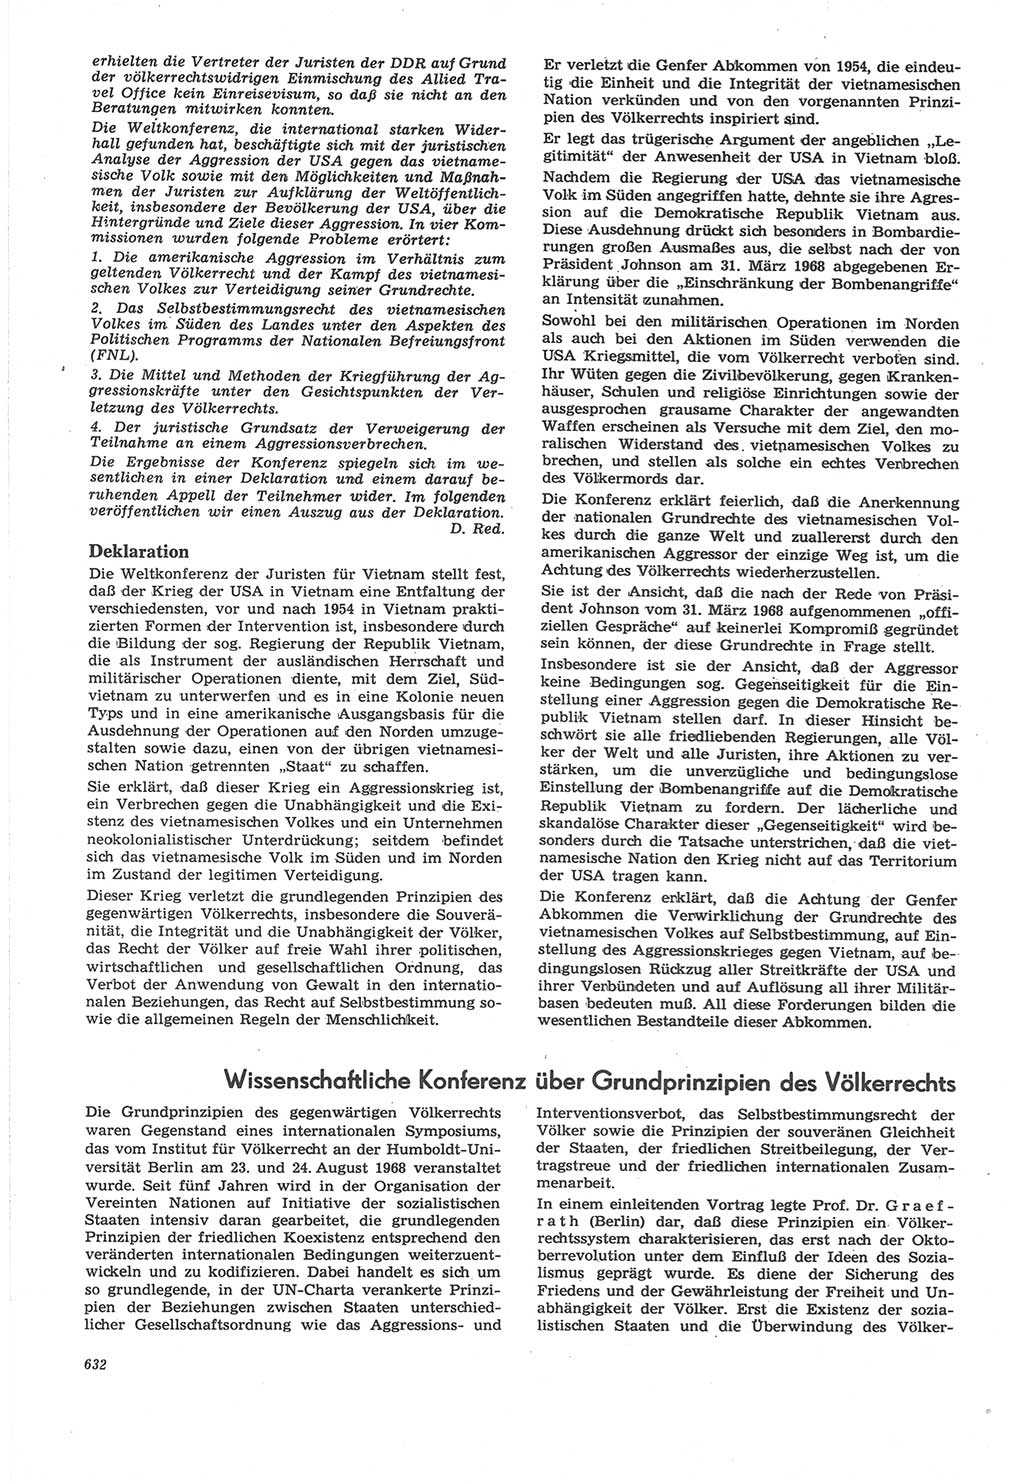 Neue Justiz (NJ), Zeitschrift für Recht und Rechtswissenschaft [Deutsche Demokratische Republik (DDR)], 22. Jahrgang 1968, Seite 632 (NJ DDR 1968, S. 632)